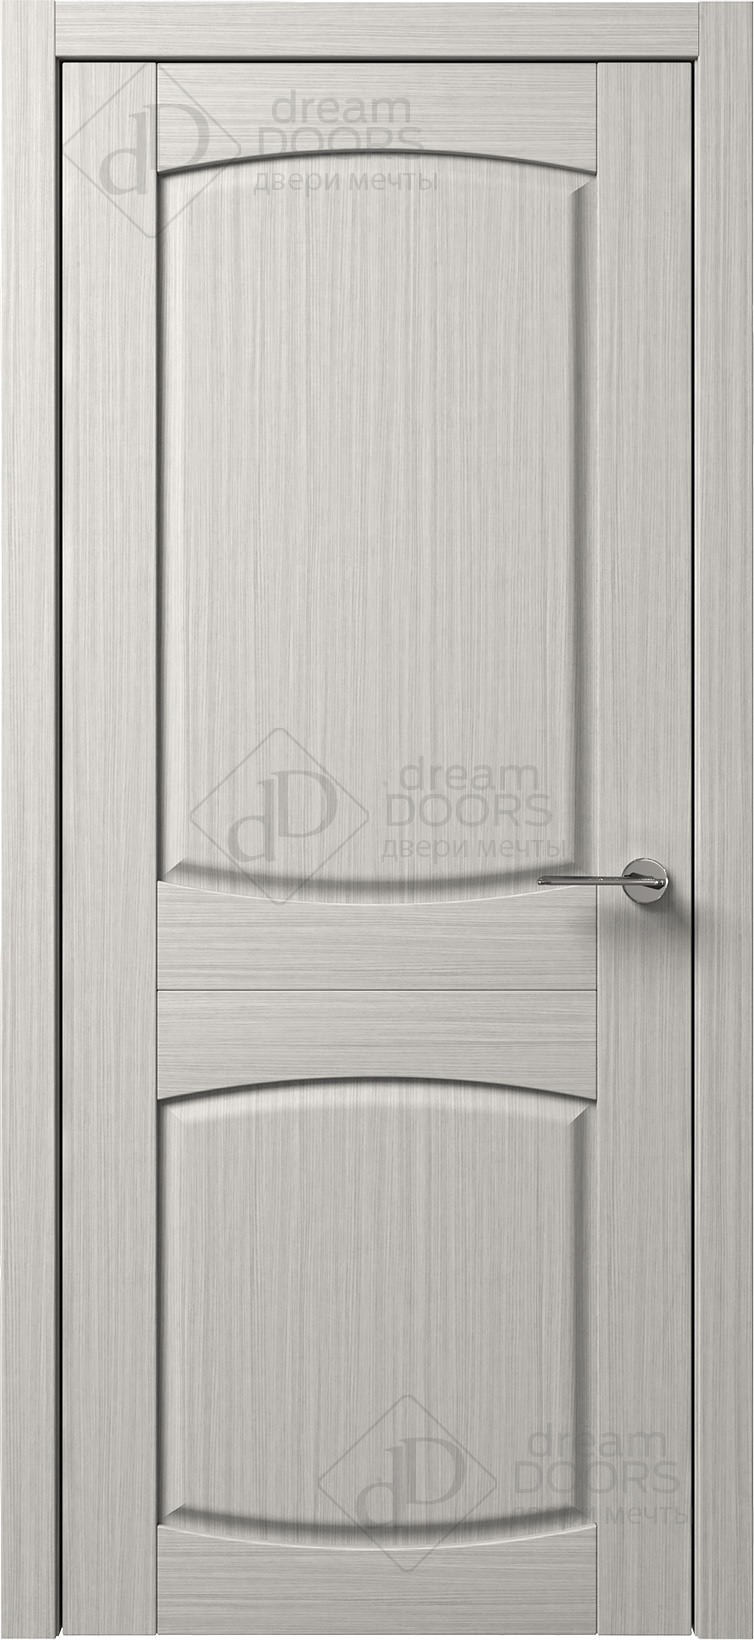 Dream Doors Межкомнатная дверь B5-3, арт. 5561 - фото №1